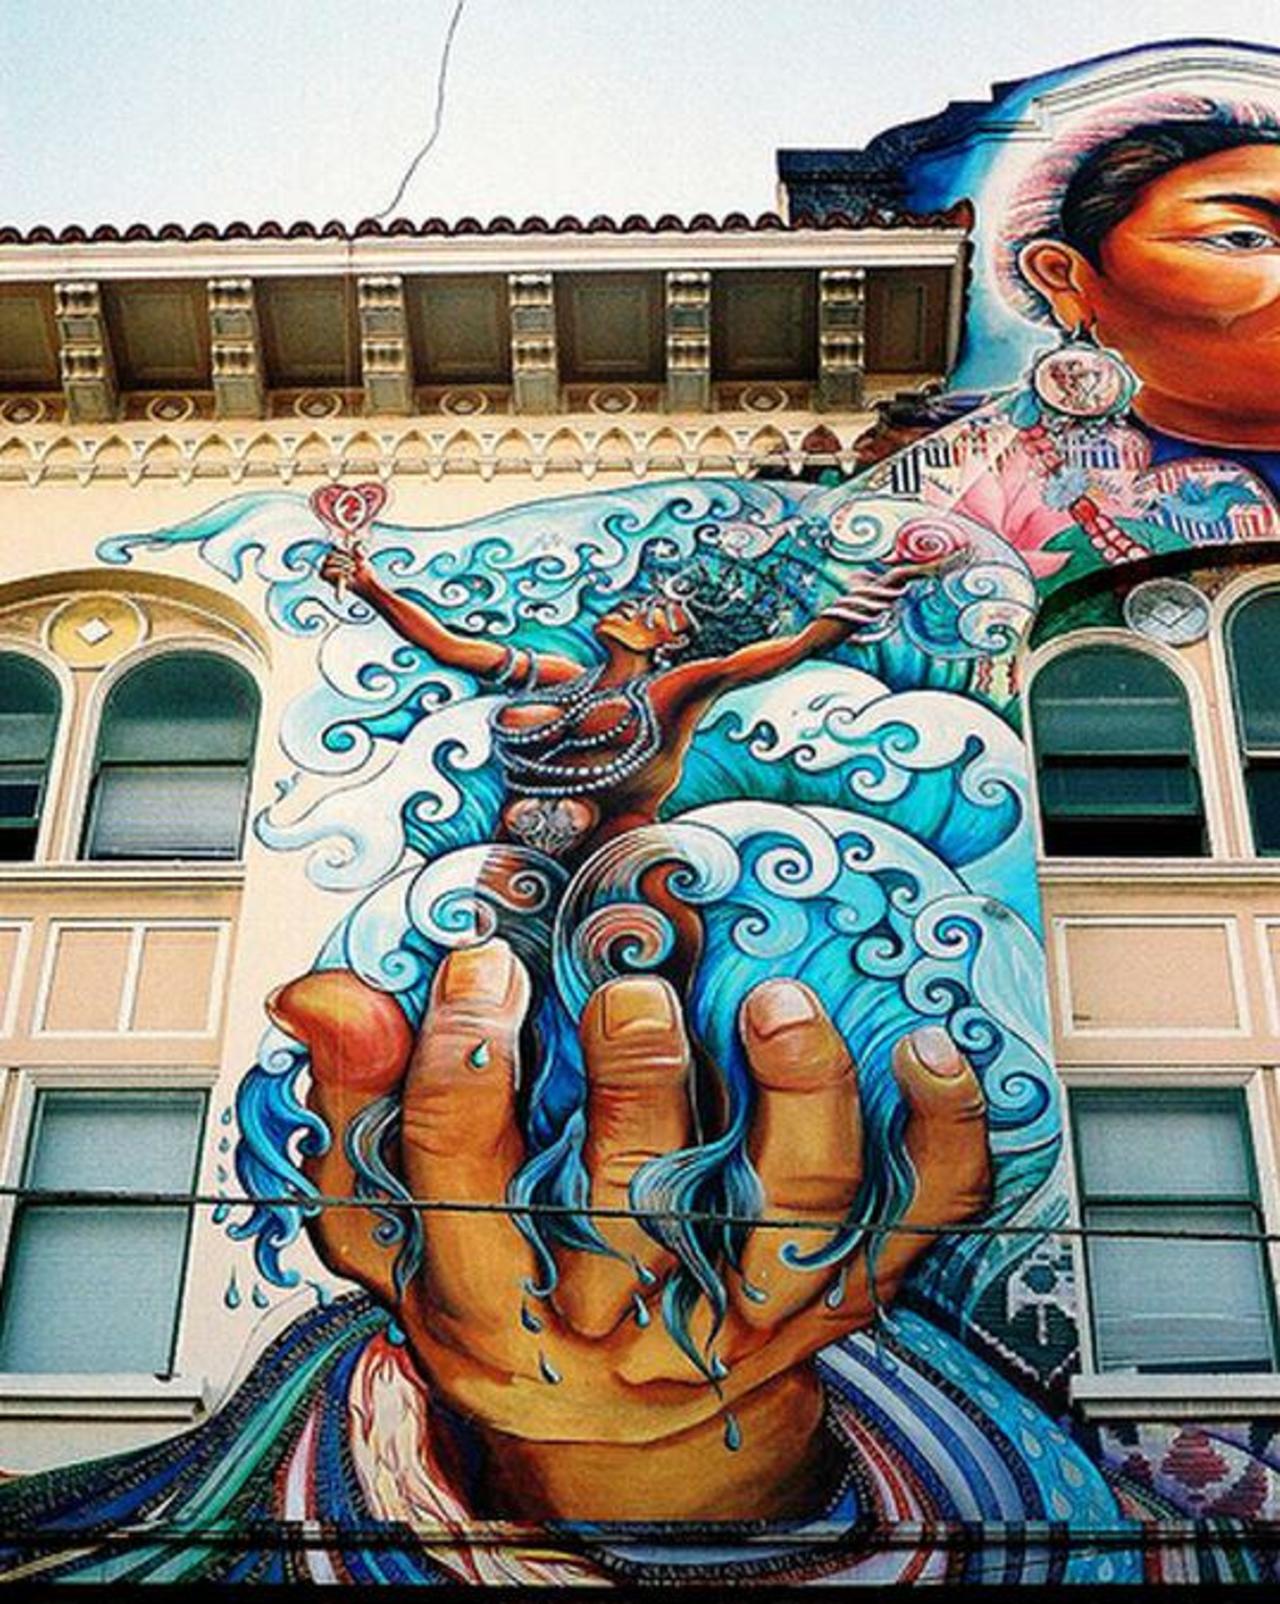 RT @Nad2107: "@5putnik1: Sea Goddess  • #streetart #graffiti #art #funky #dope . : https://t.co/xcw8wkpMMk" ☆ ☆ ☆